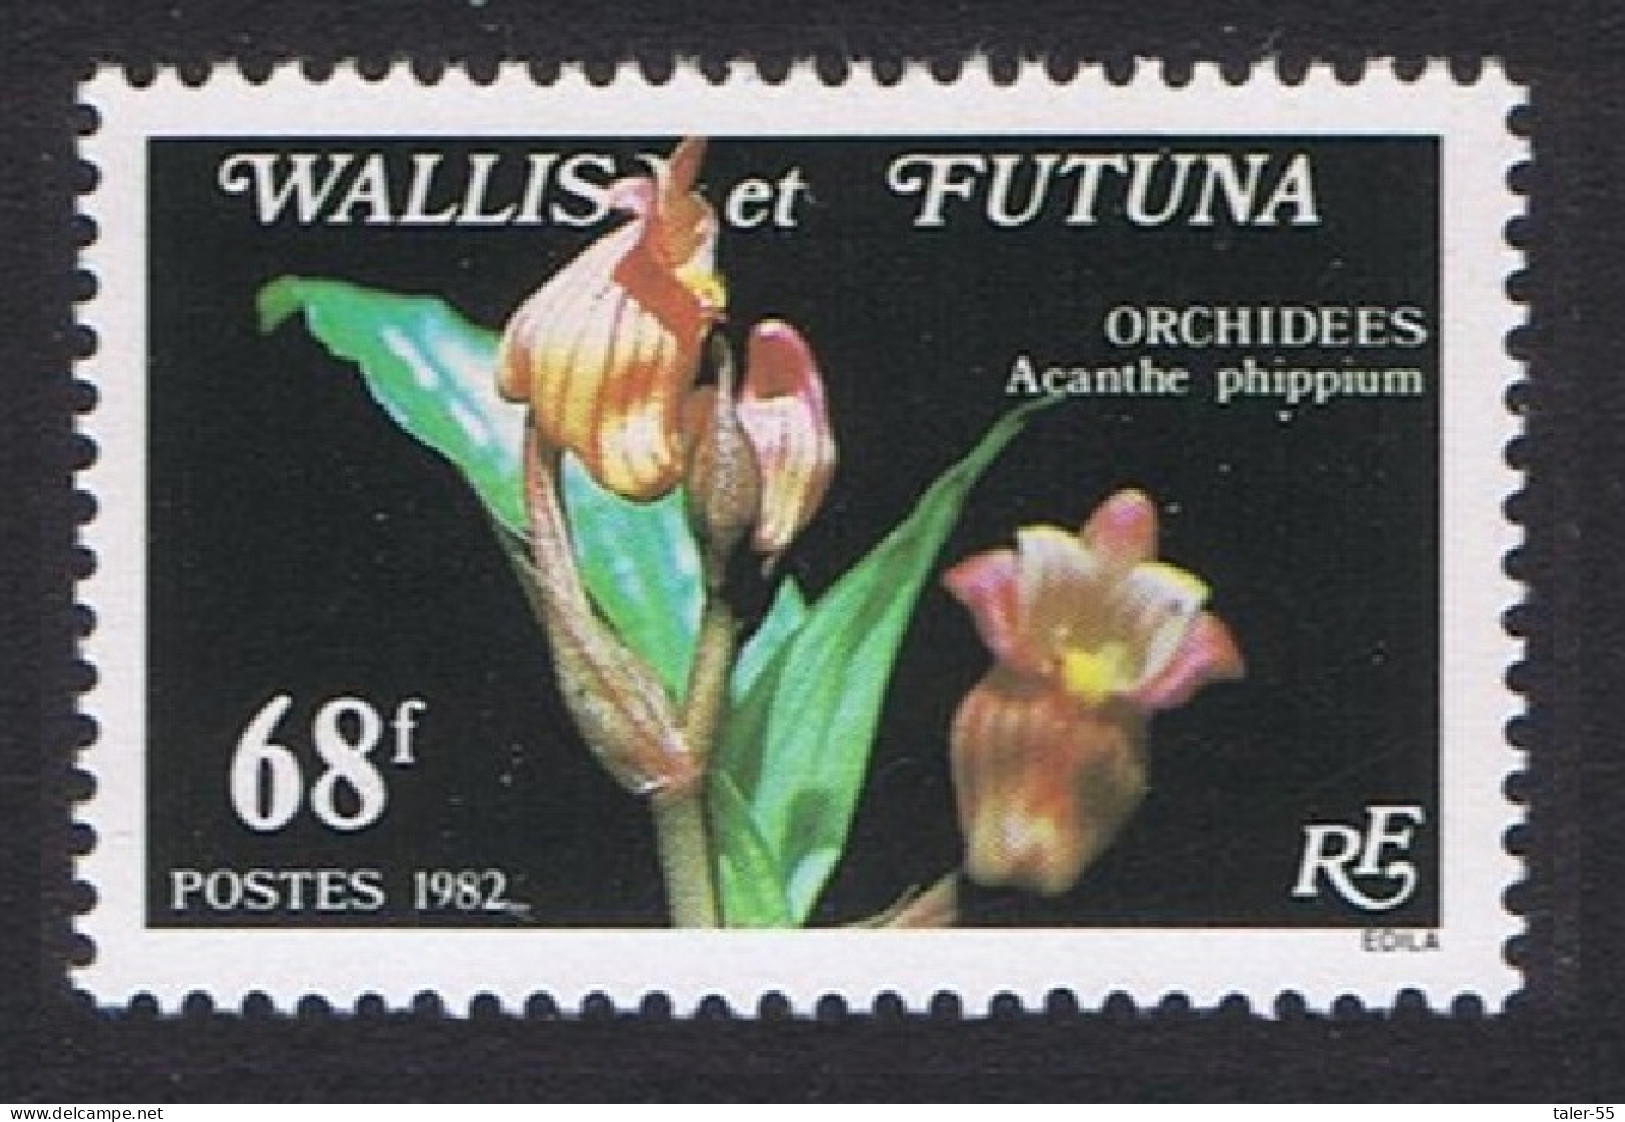 Wallis And Futuna Orchids Acanthe Phippium 68f 1982 MNH SG#397 Sc#284 - Ongebruikt